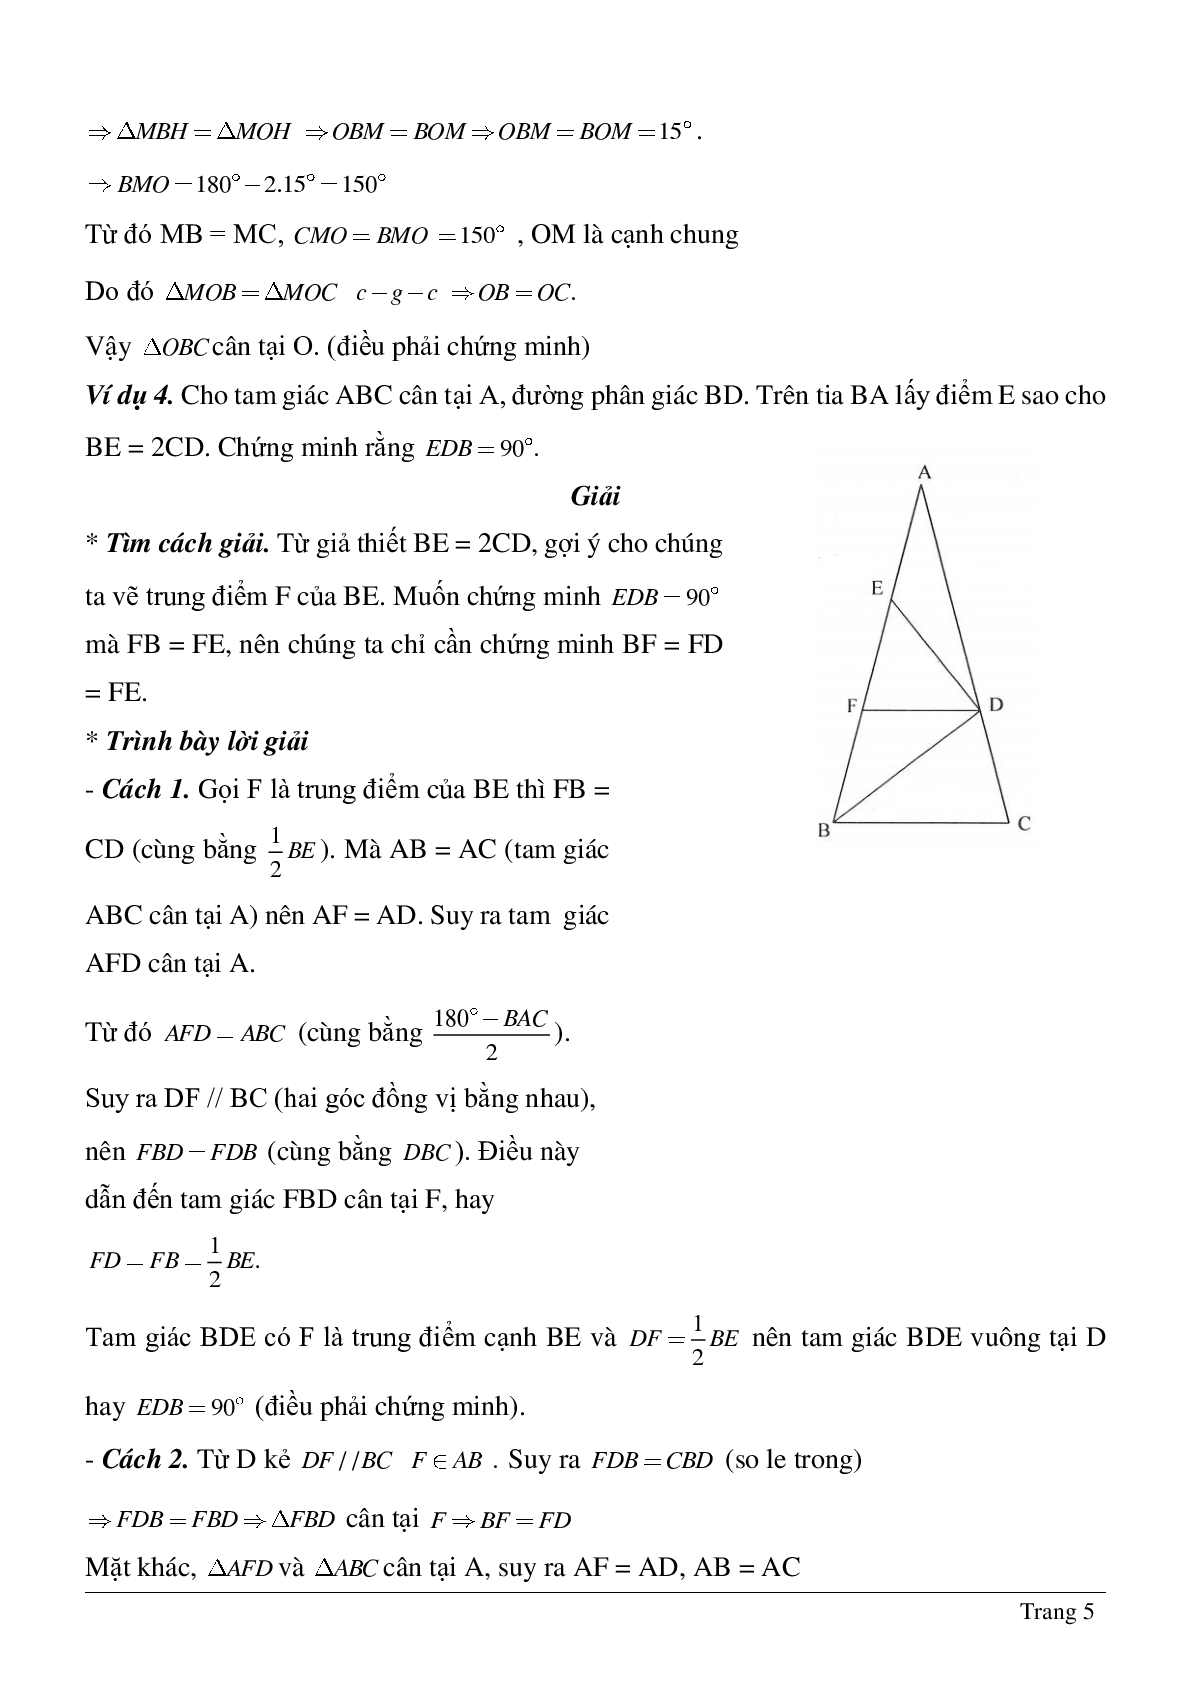 Phương pháp giải về Vẽ hình phụ để giải các bài toán hình học có lời giải (trang 5)